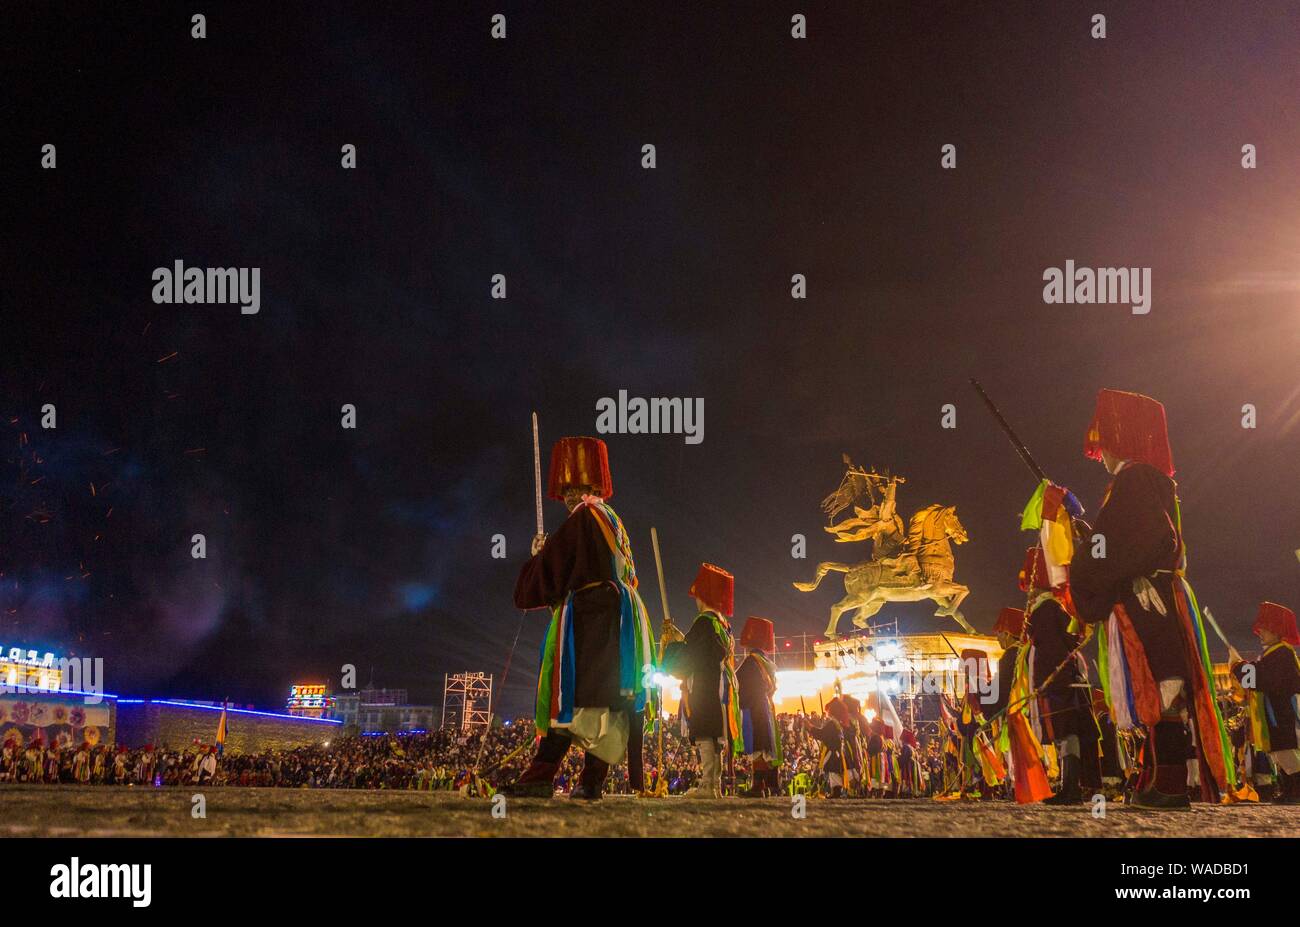 Il popolo cinese dei tibetani gruppo etnico si riuniranno presso un falò party per celebrare l'annuale Yushu Qinghai Horse Racing Festival in tibetano Yushu Autonomo Foto Stock